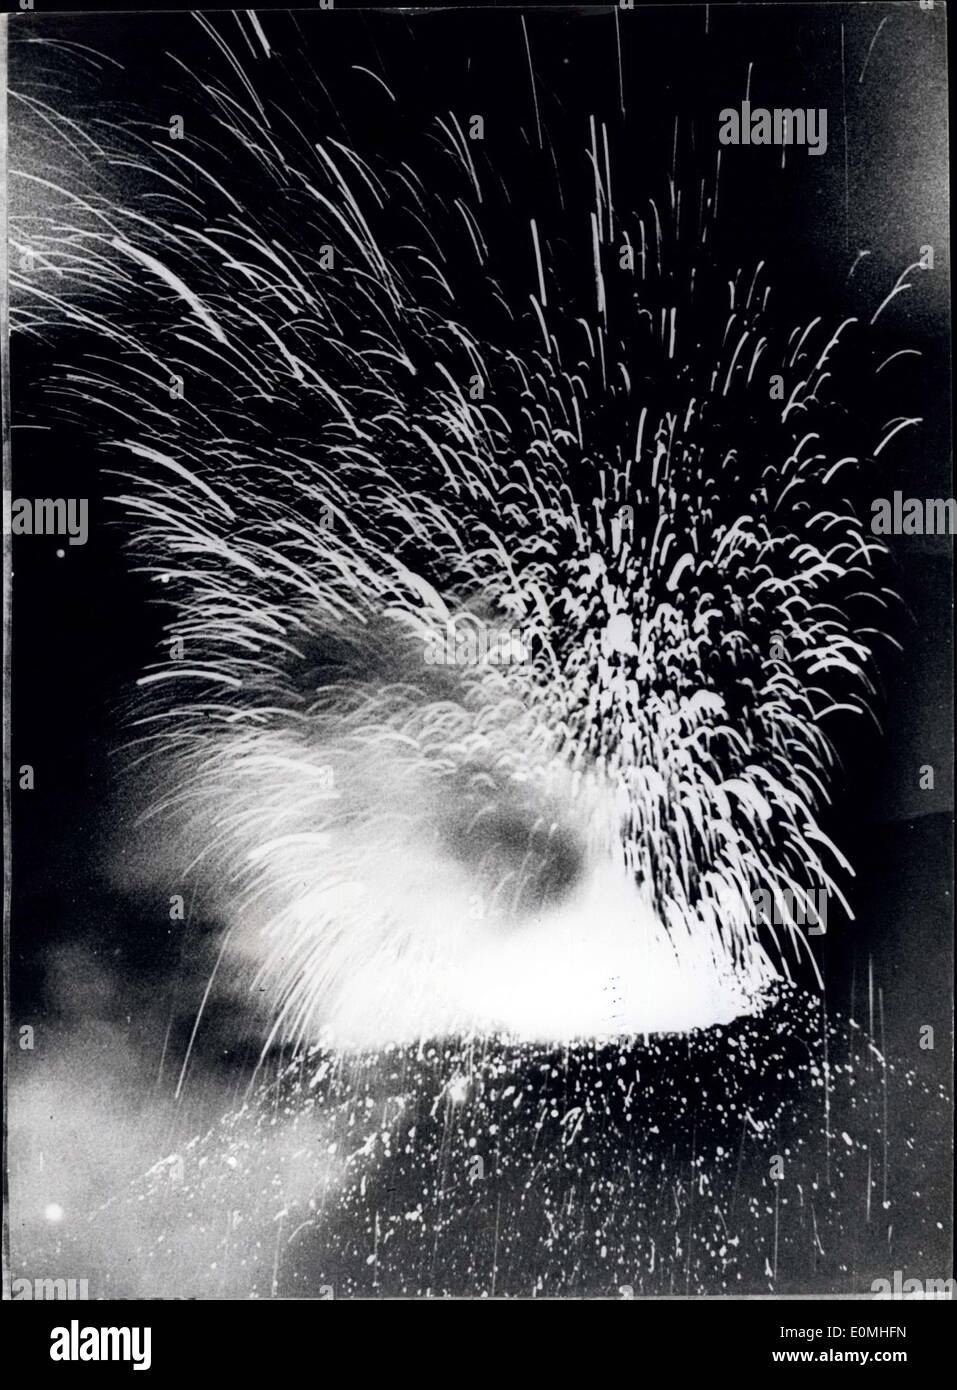 25 luglio 1955 - Nuova eruzione del cratere Nord Est dell'Etna-Sicilia: Fiamme-fumo e nuvole di vapore ssh alto nel cielo nella recente eruzione del cratere Nord Est ''illeggibile'' sulla cima dell'Etna in Sicilia. Il Cratere si trova a 3150 metri sul livello del mare. ''illeggibile'' fuso versato sul cerchio in avanzamento alla velocità di ''illeggibile'' 20 metri al giorno. Ogni sette minuti si è verificato un'esplosione ''illeggibile'' accompagnata da un'ulteriore pioggia di fuoco - ''illeggibile'' lava e vapore Foto Stock